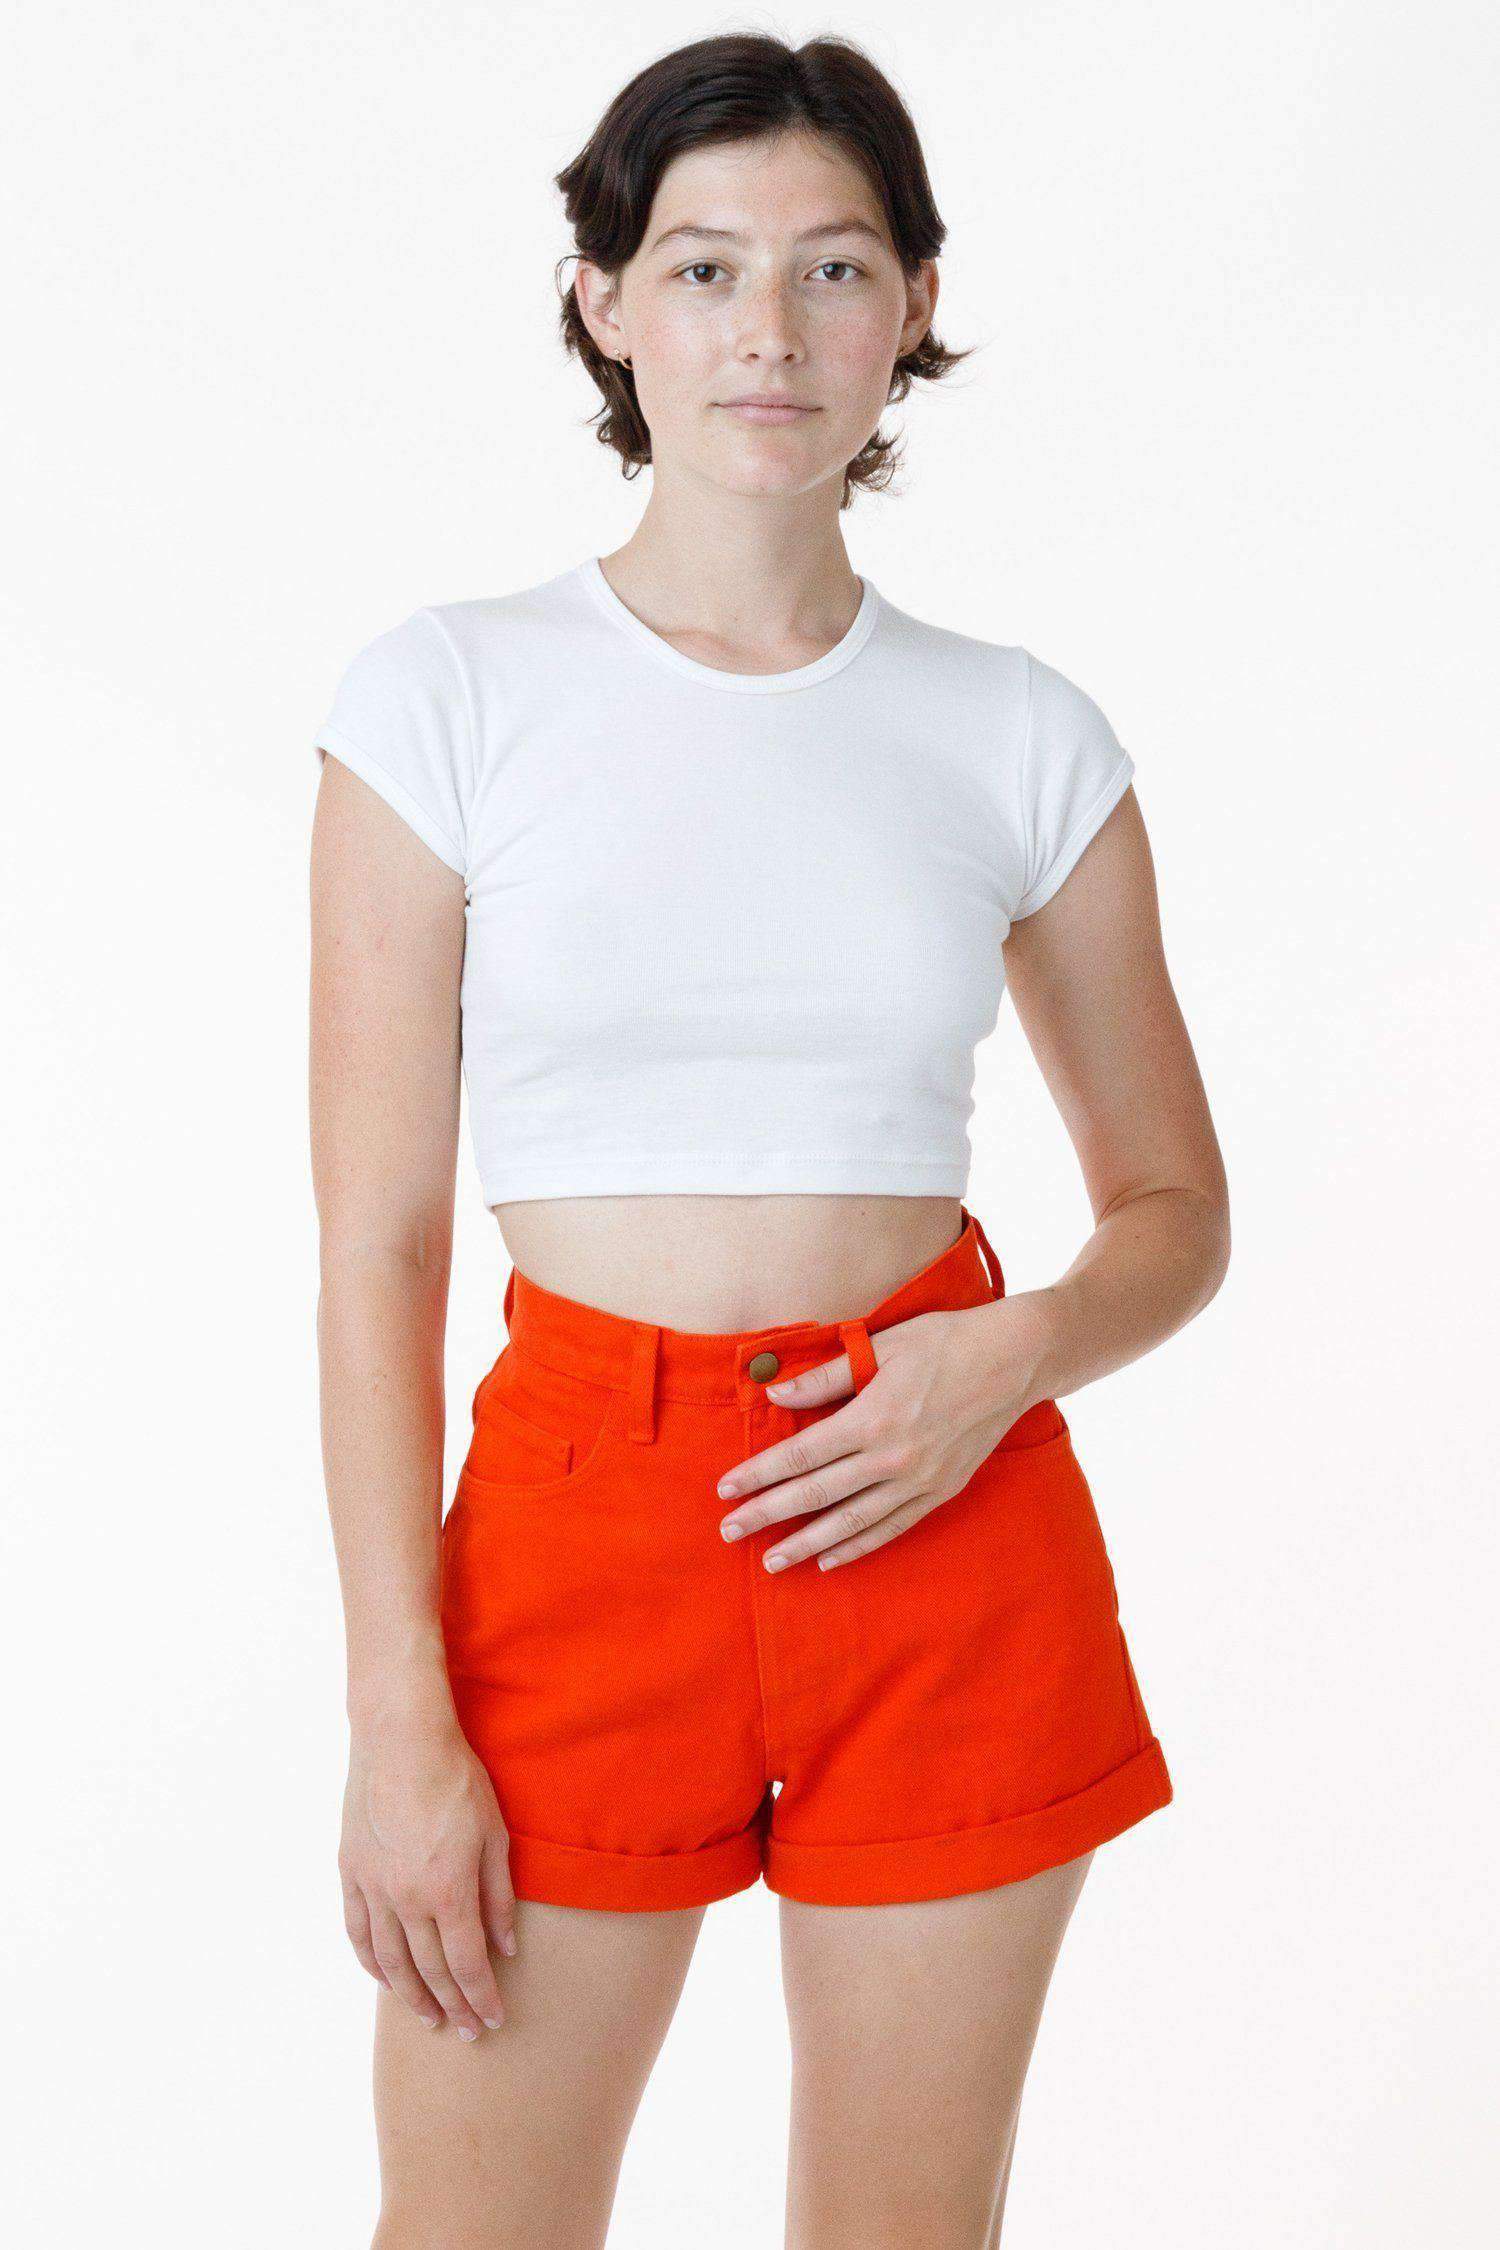 RBDW05GD - Bull Denim Garment Dye Cuff Short (Limited Edition) Shorts Los Angeles Apparel Bright Orange 24 